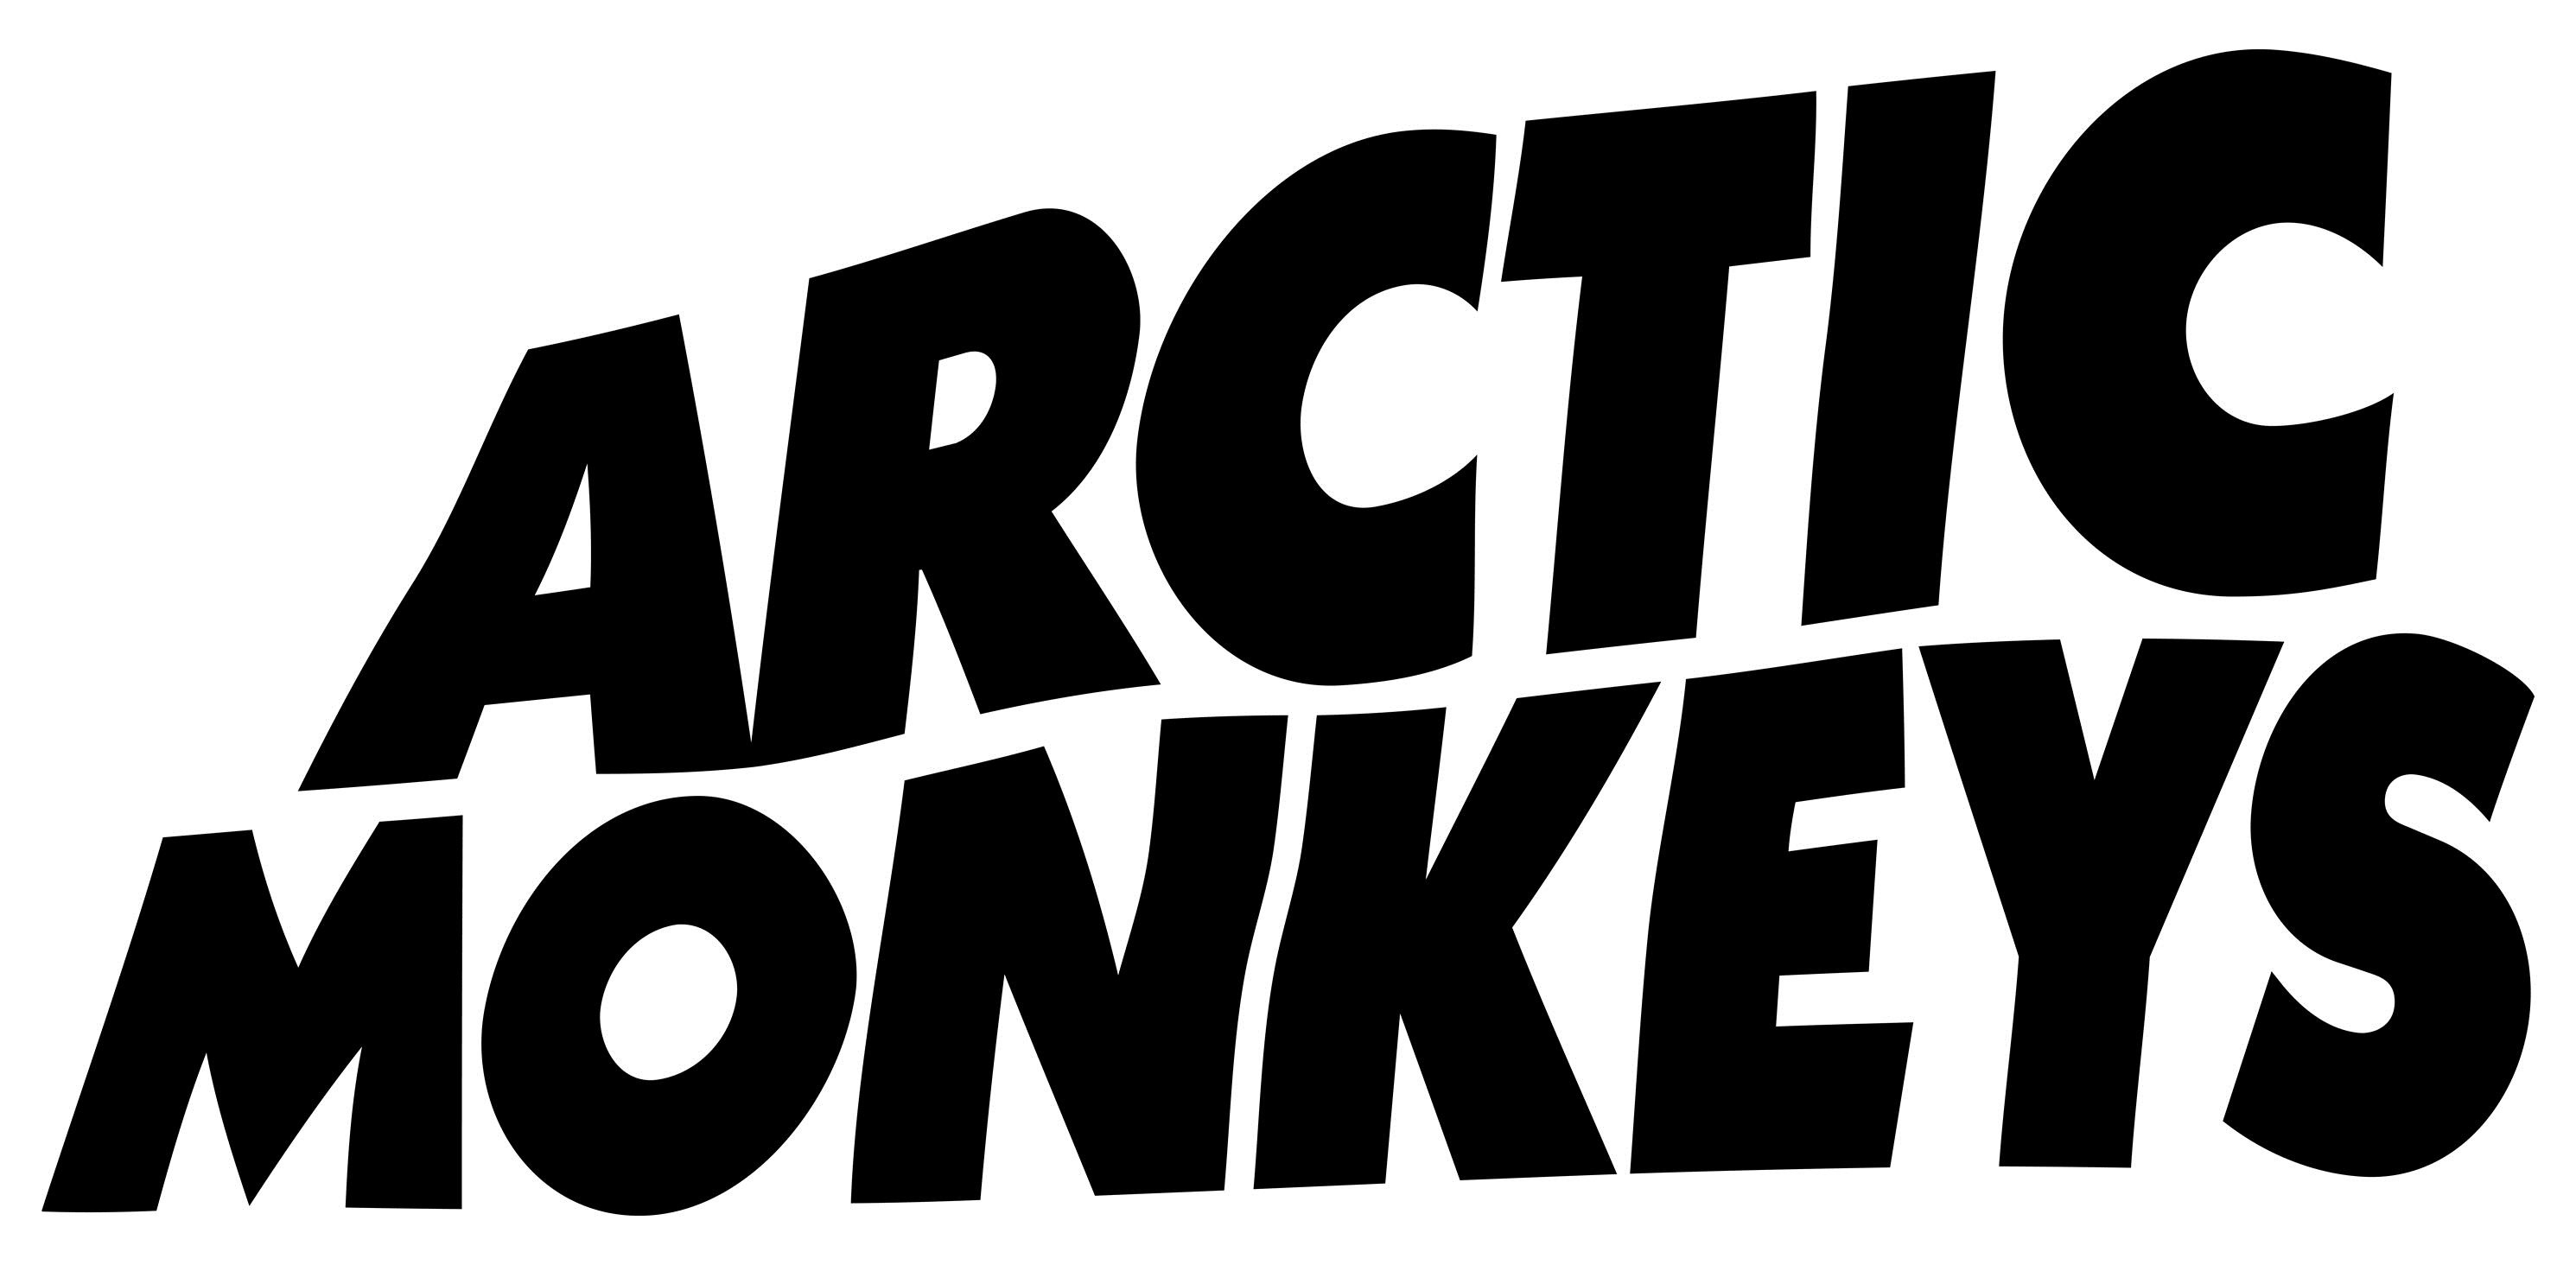 Arctic Monkeys, Band members, Music genre, Fan devotion, 2990x1470 Dual Screen Desktop